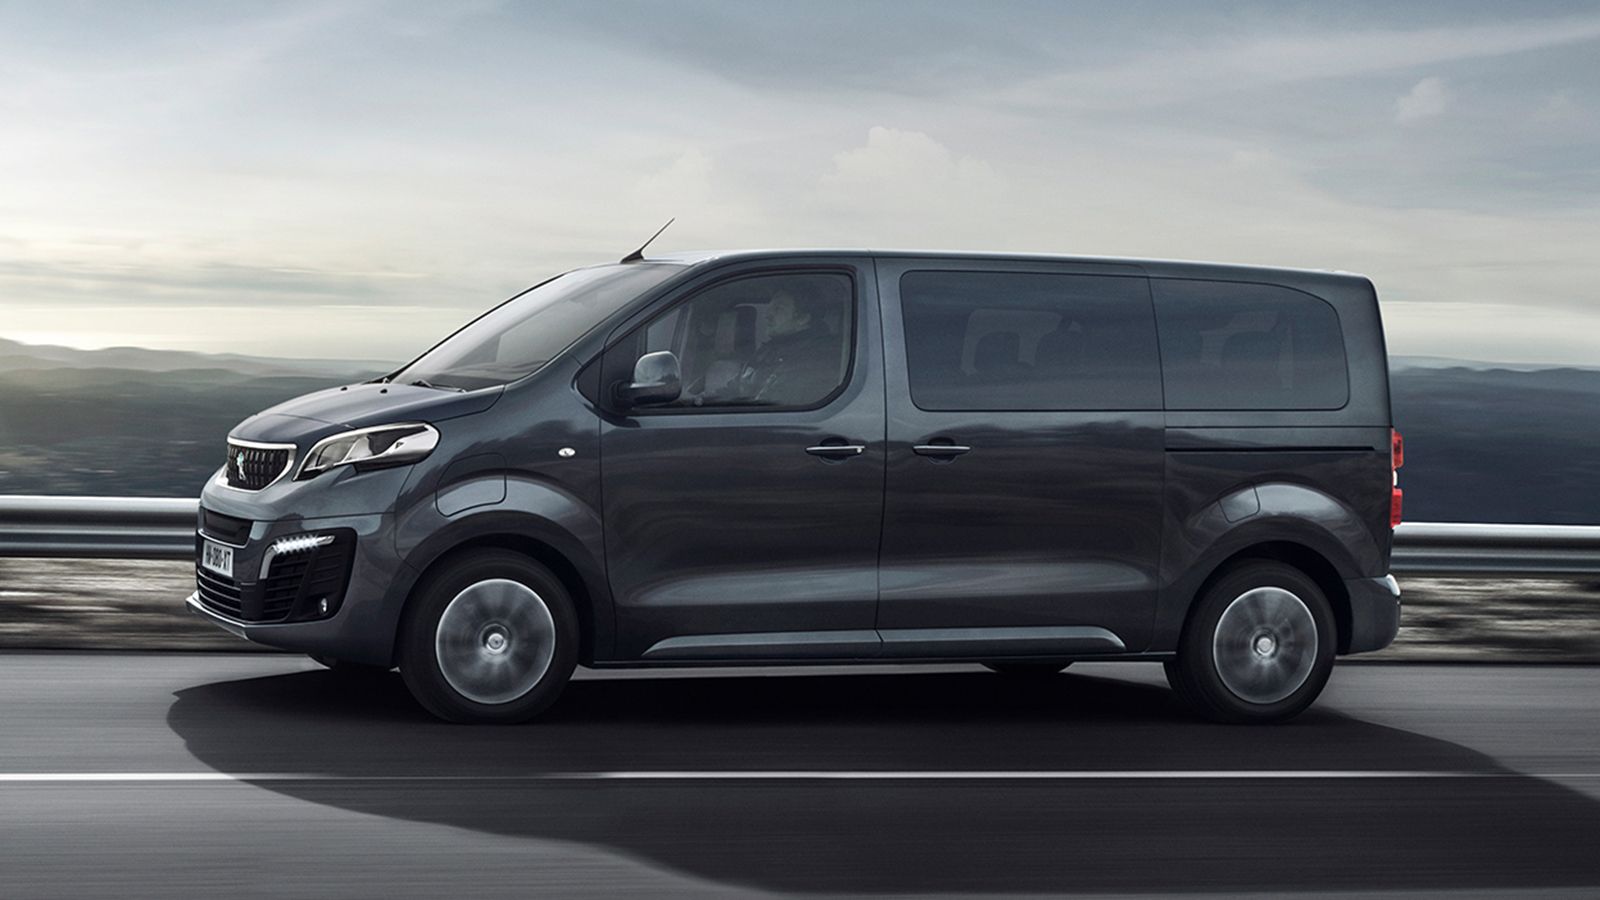 Το έως και 9 θέσεων Peugeot e-Traveller (φωτό) είναι διαθέσιμο σε 3 μήκη αμαξώματος με μπαταρίες 50 ή 75 kWh, για μέγιστη αυτονομία 330 χλμ. Το e-Expert φορτίζει (στο 80%) τις μπαταρίες των 50 kWh σε 